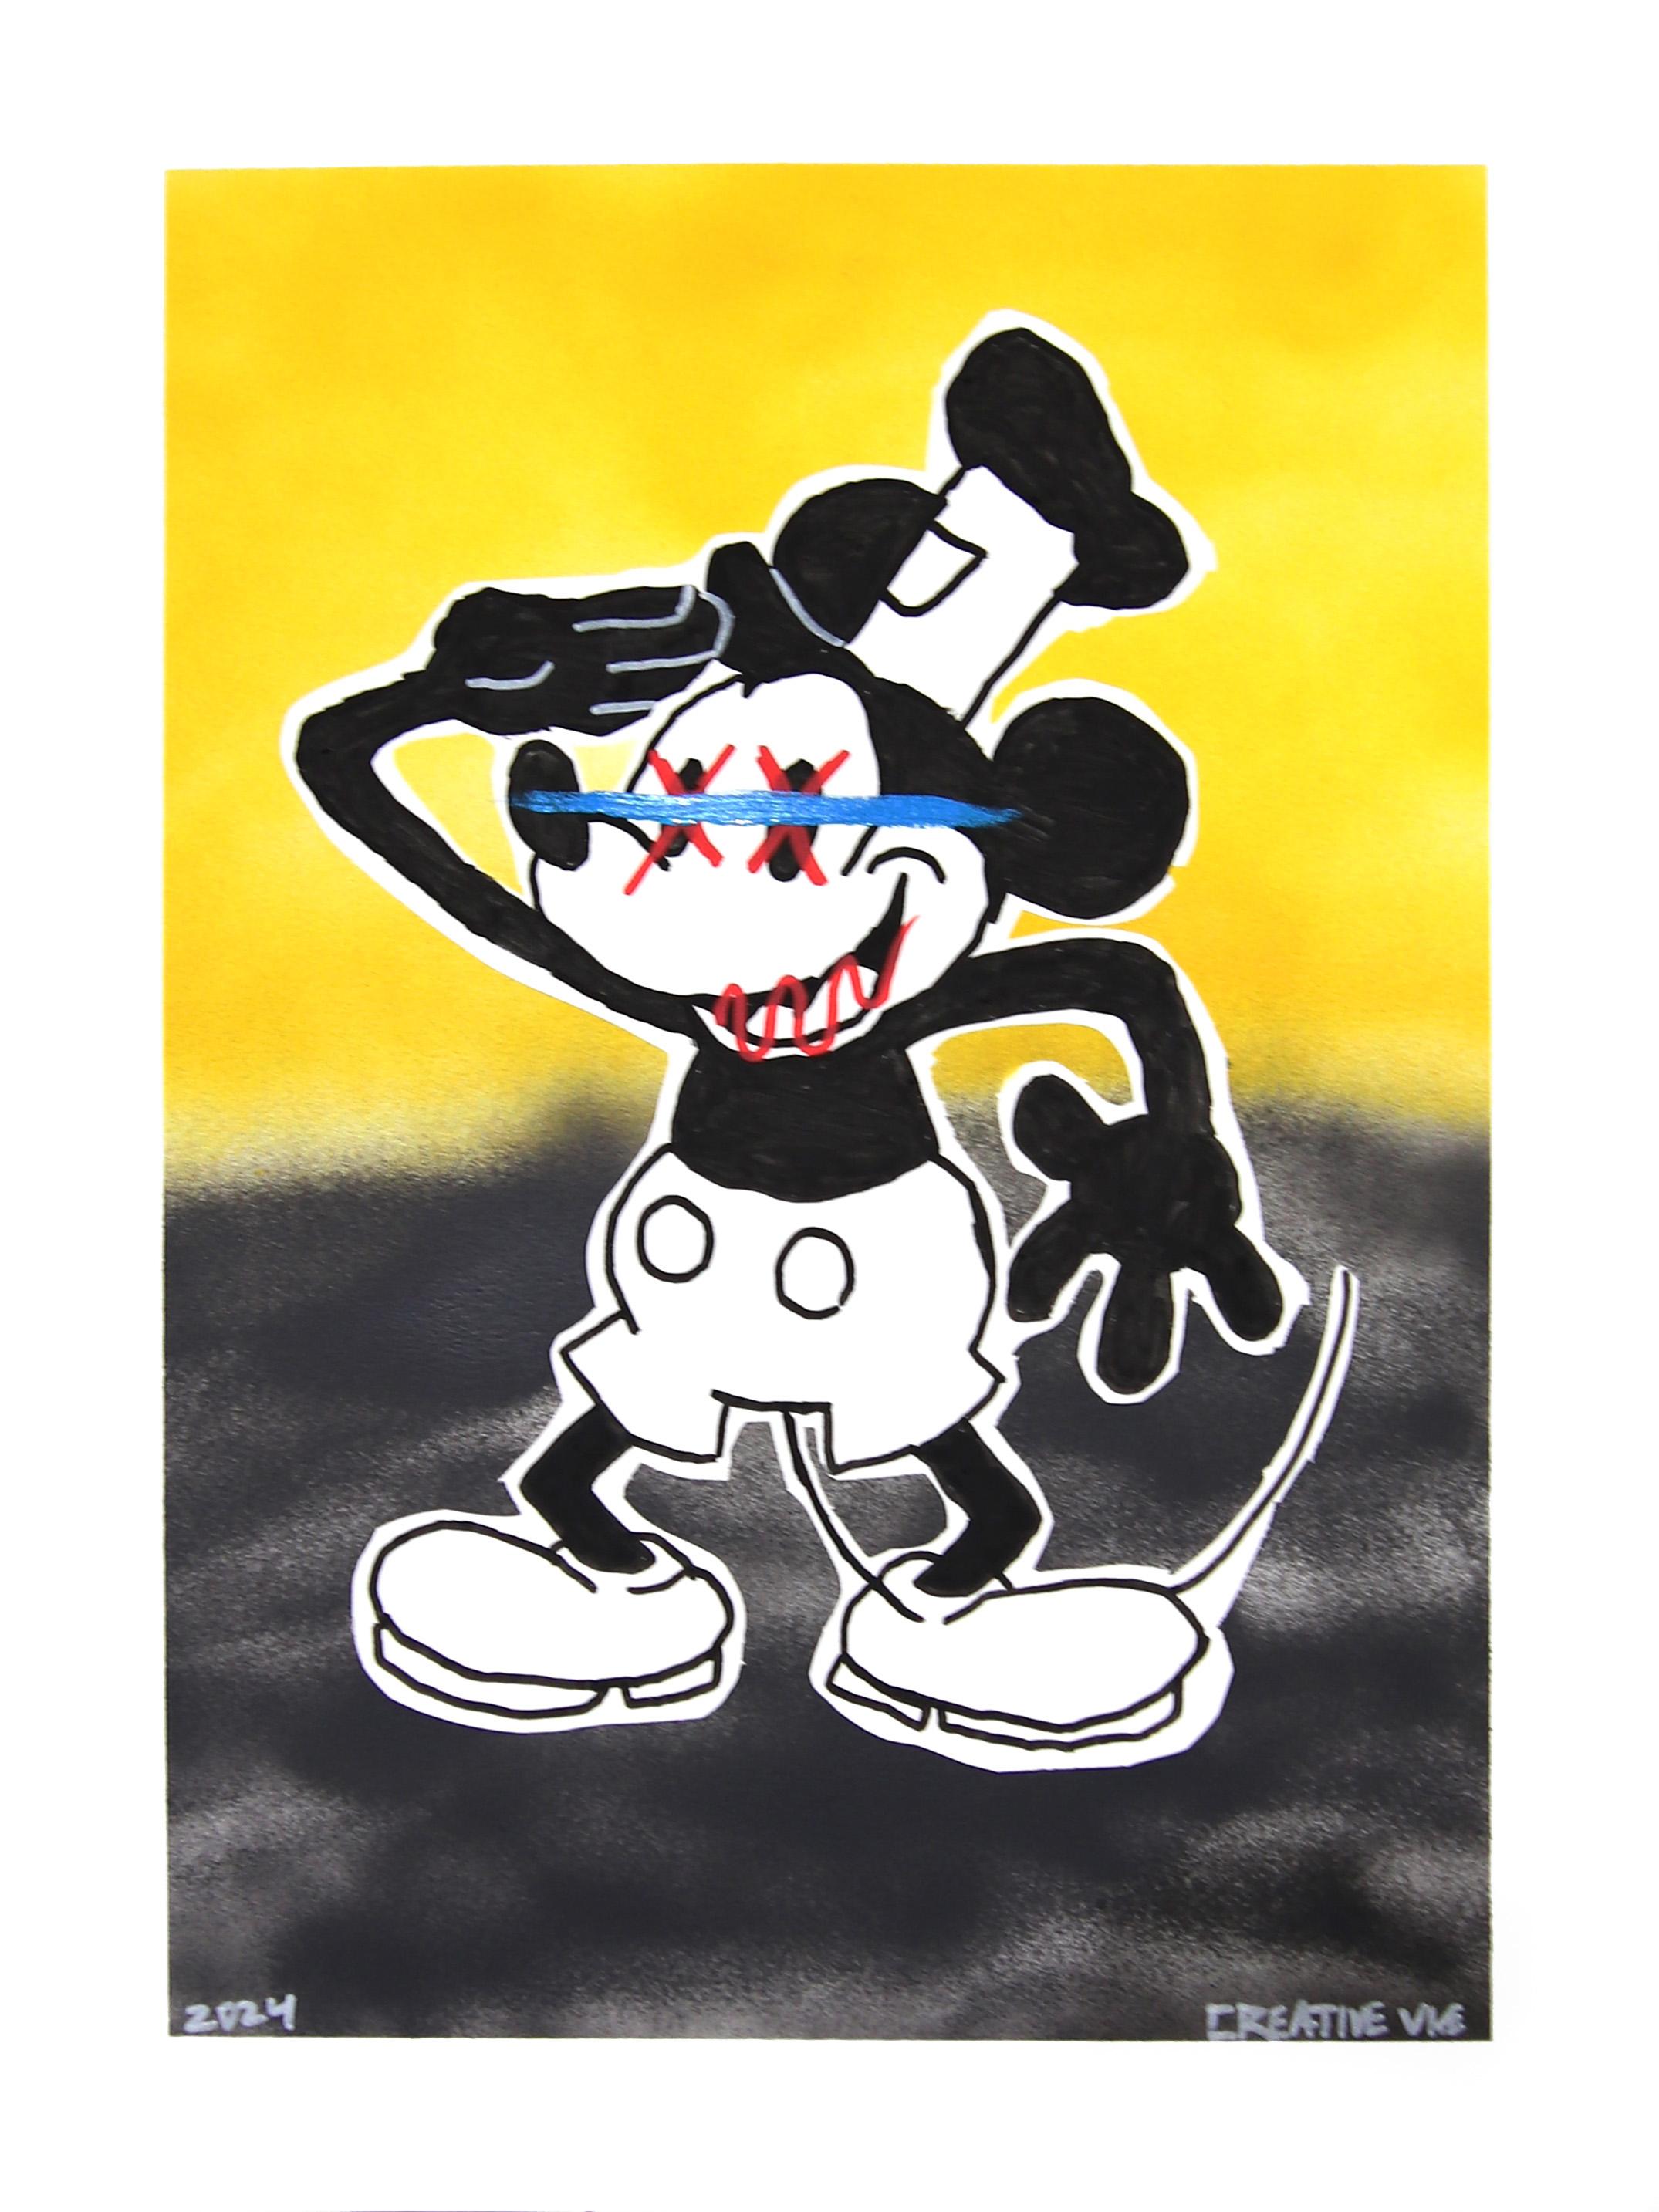 Der US-Marine-Veteran Randy Morales verbindet in seinen Street-Pop-Kunstwerken Nostalgie und grafischen Expressionismus. Die Wahl der Themen seiner Kunstwerke ist stark von seinen Erfahrungen als Kind in den 90er Jahren geprägt. Indem er das Thema